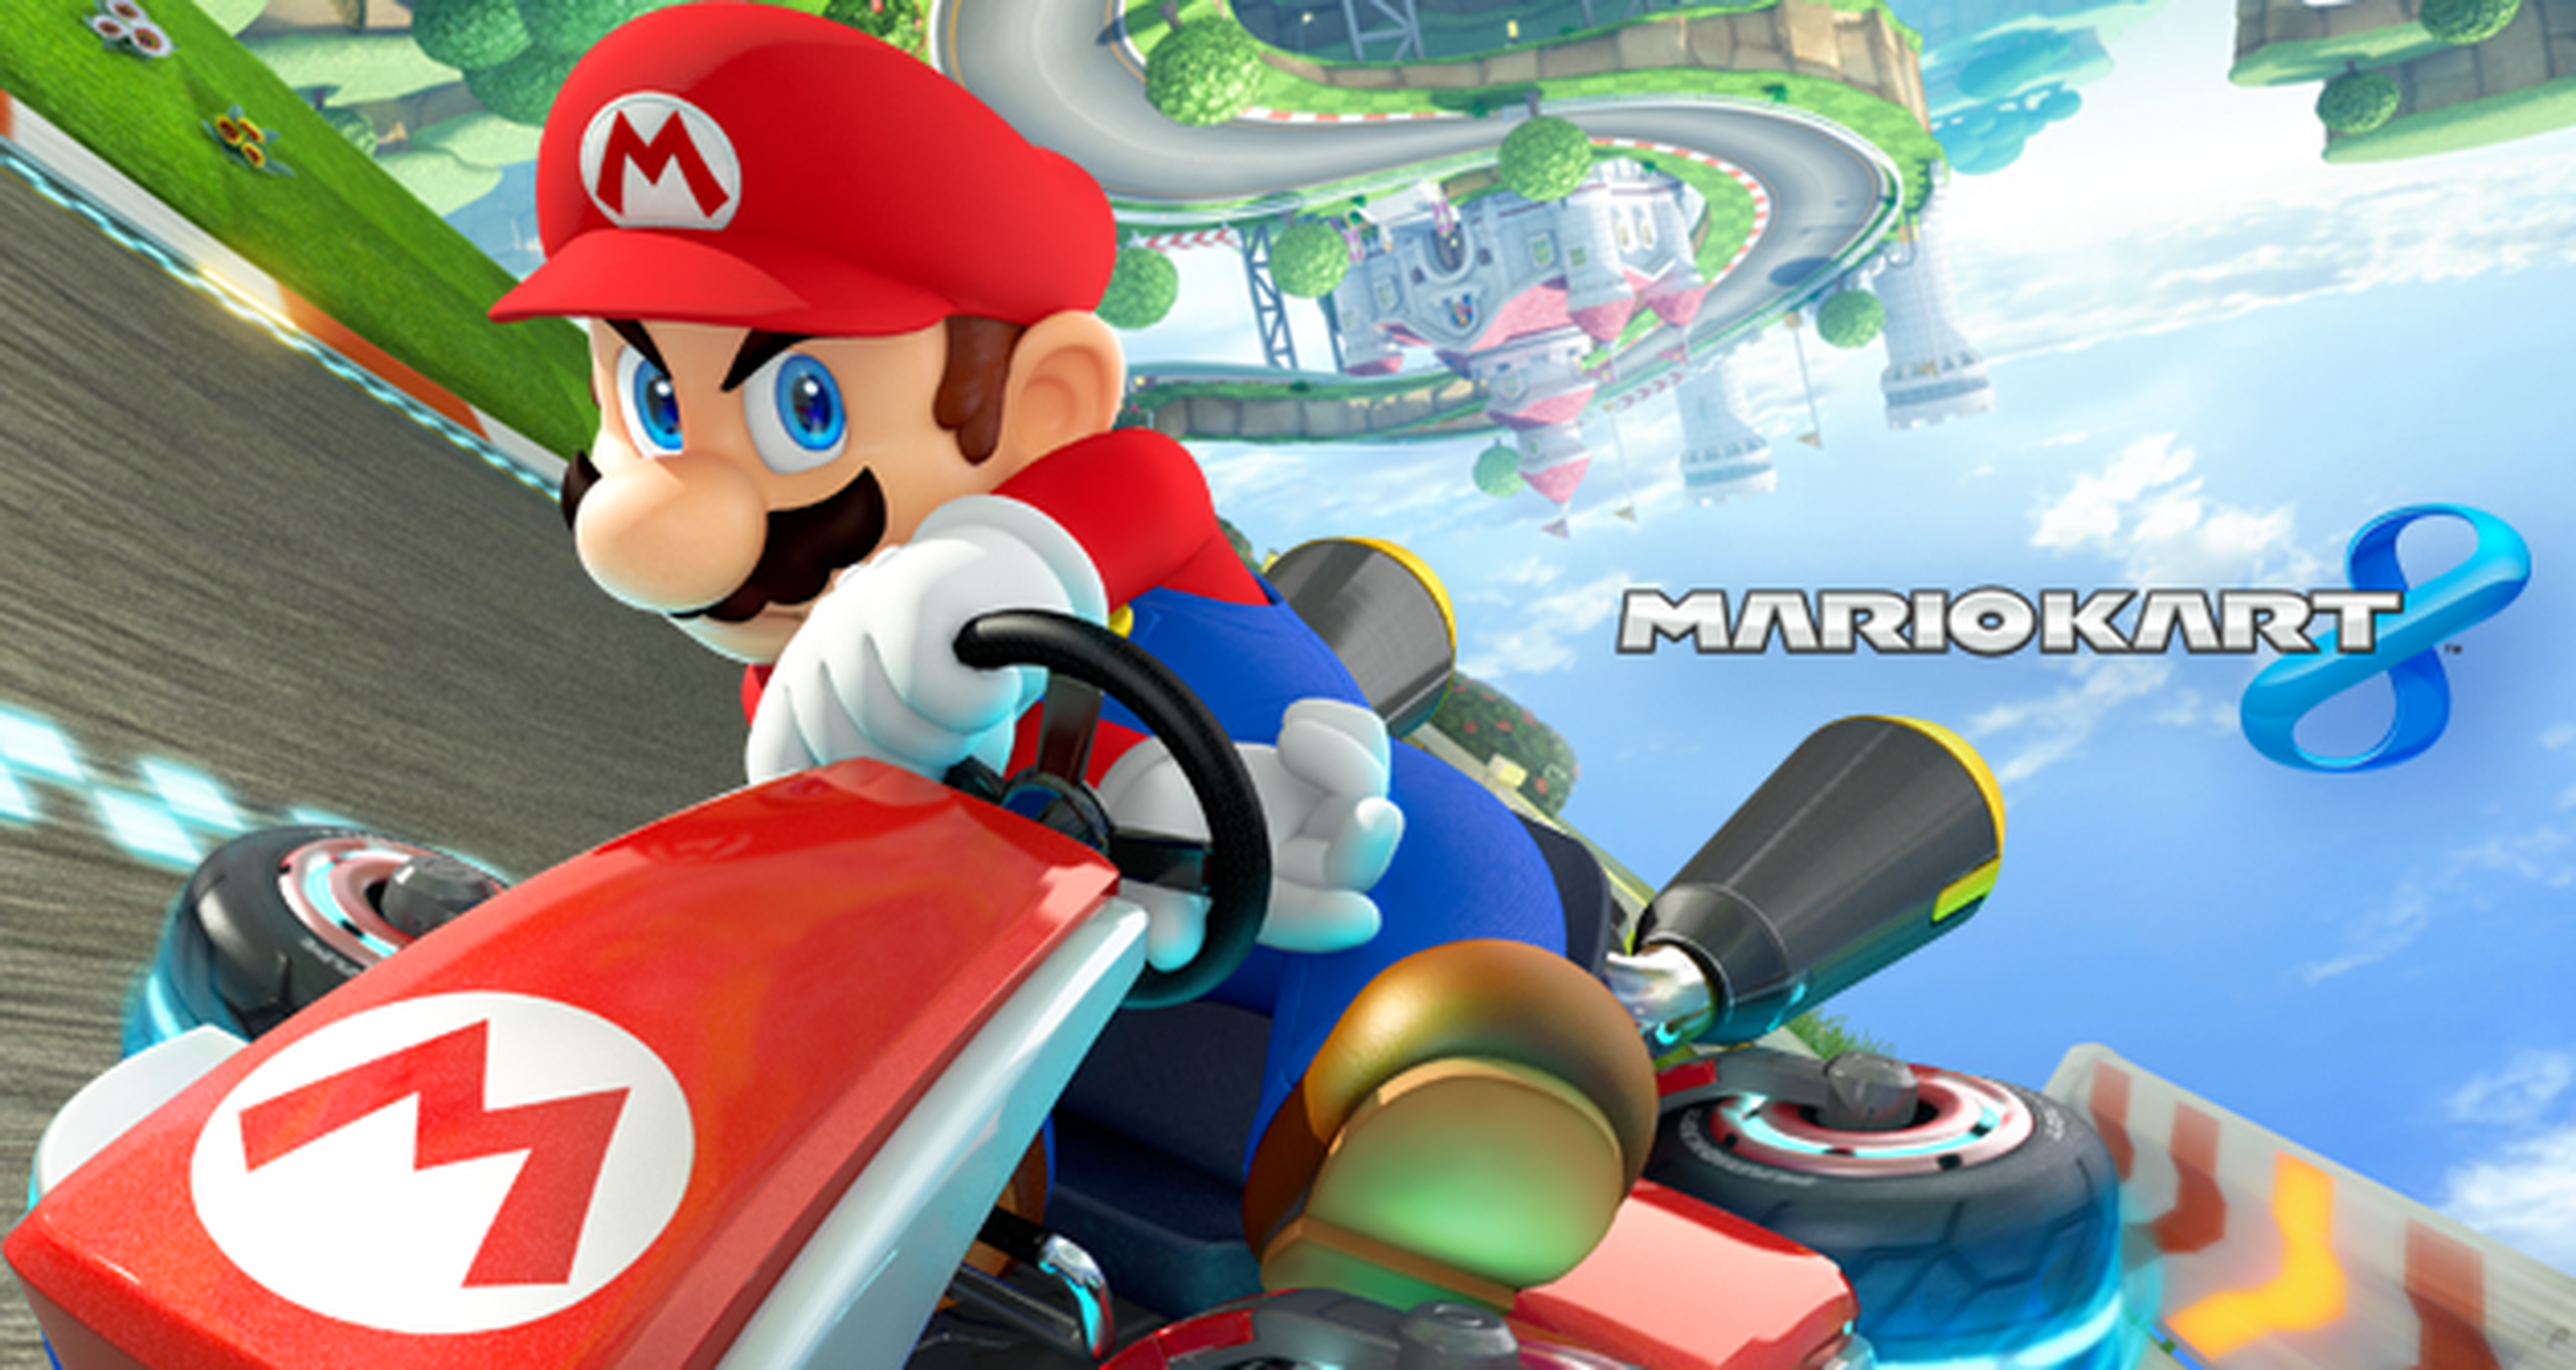 Torneo Mario Kart 8 a 200cc: Resultados Semana 1 y Convocatoria Semana 2